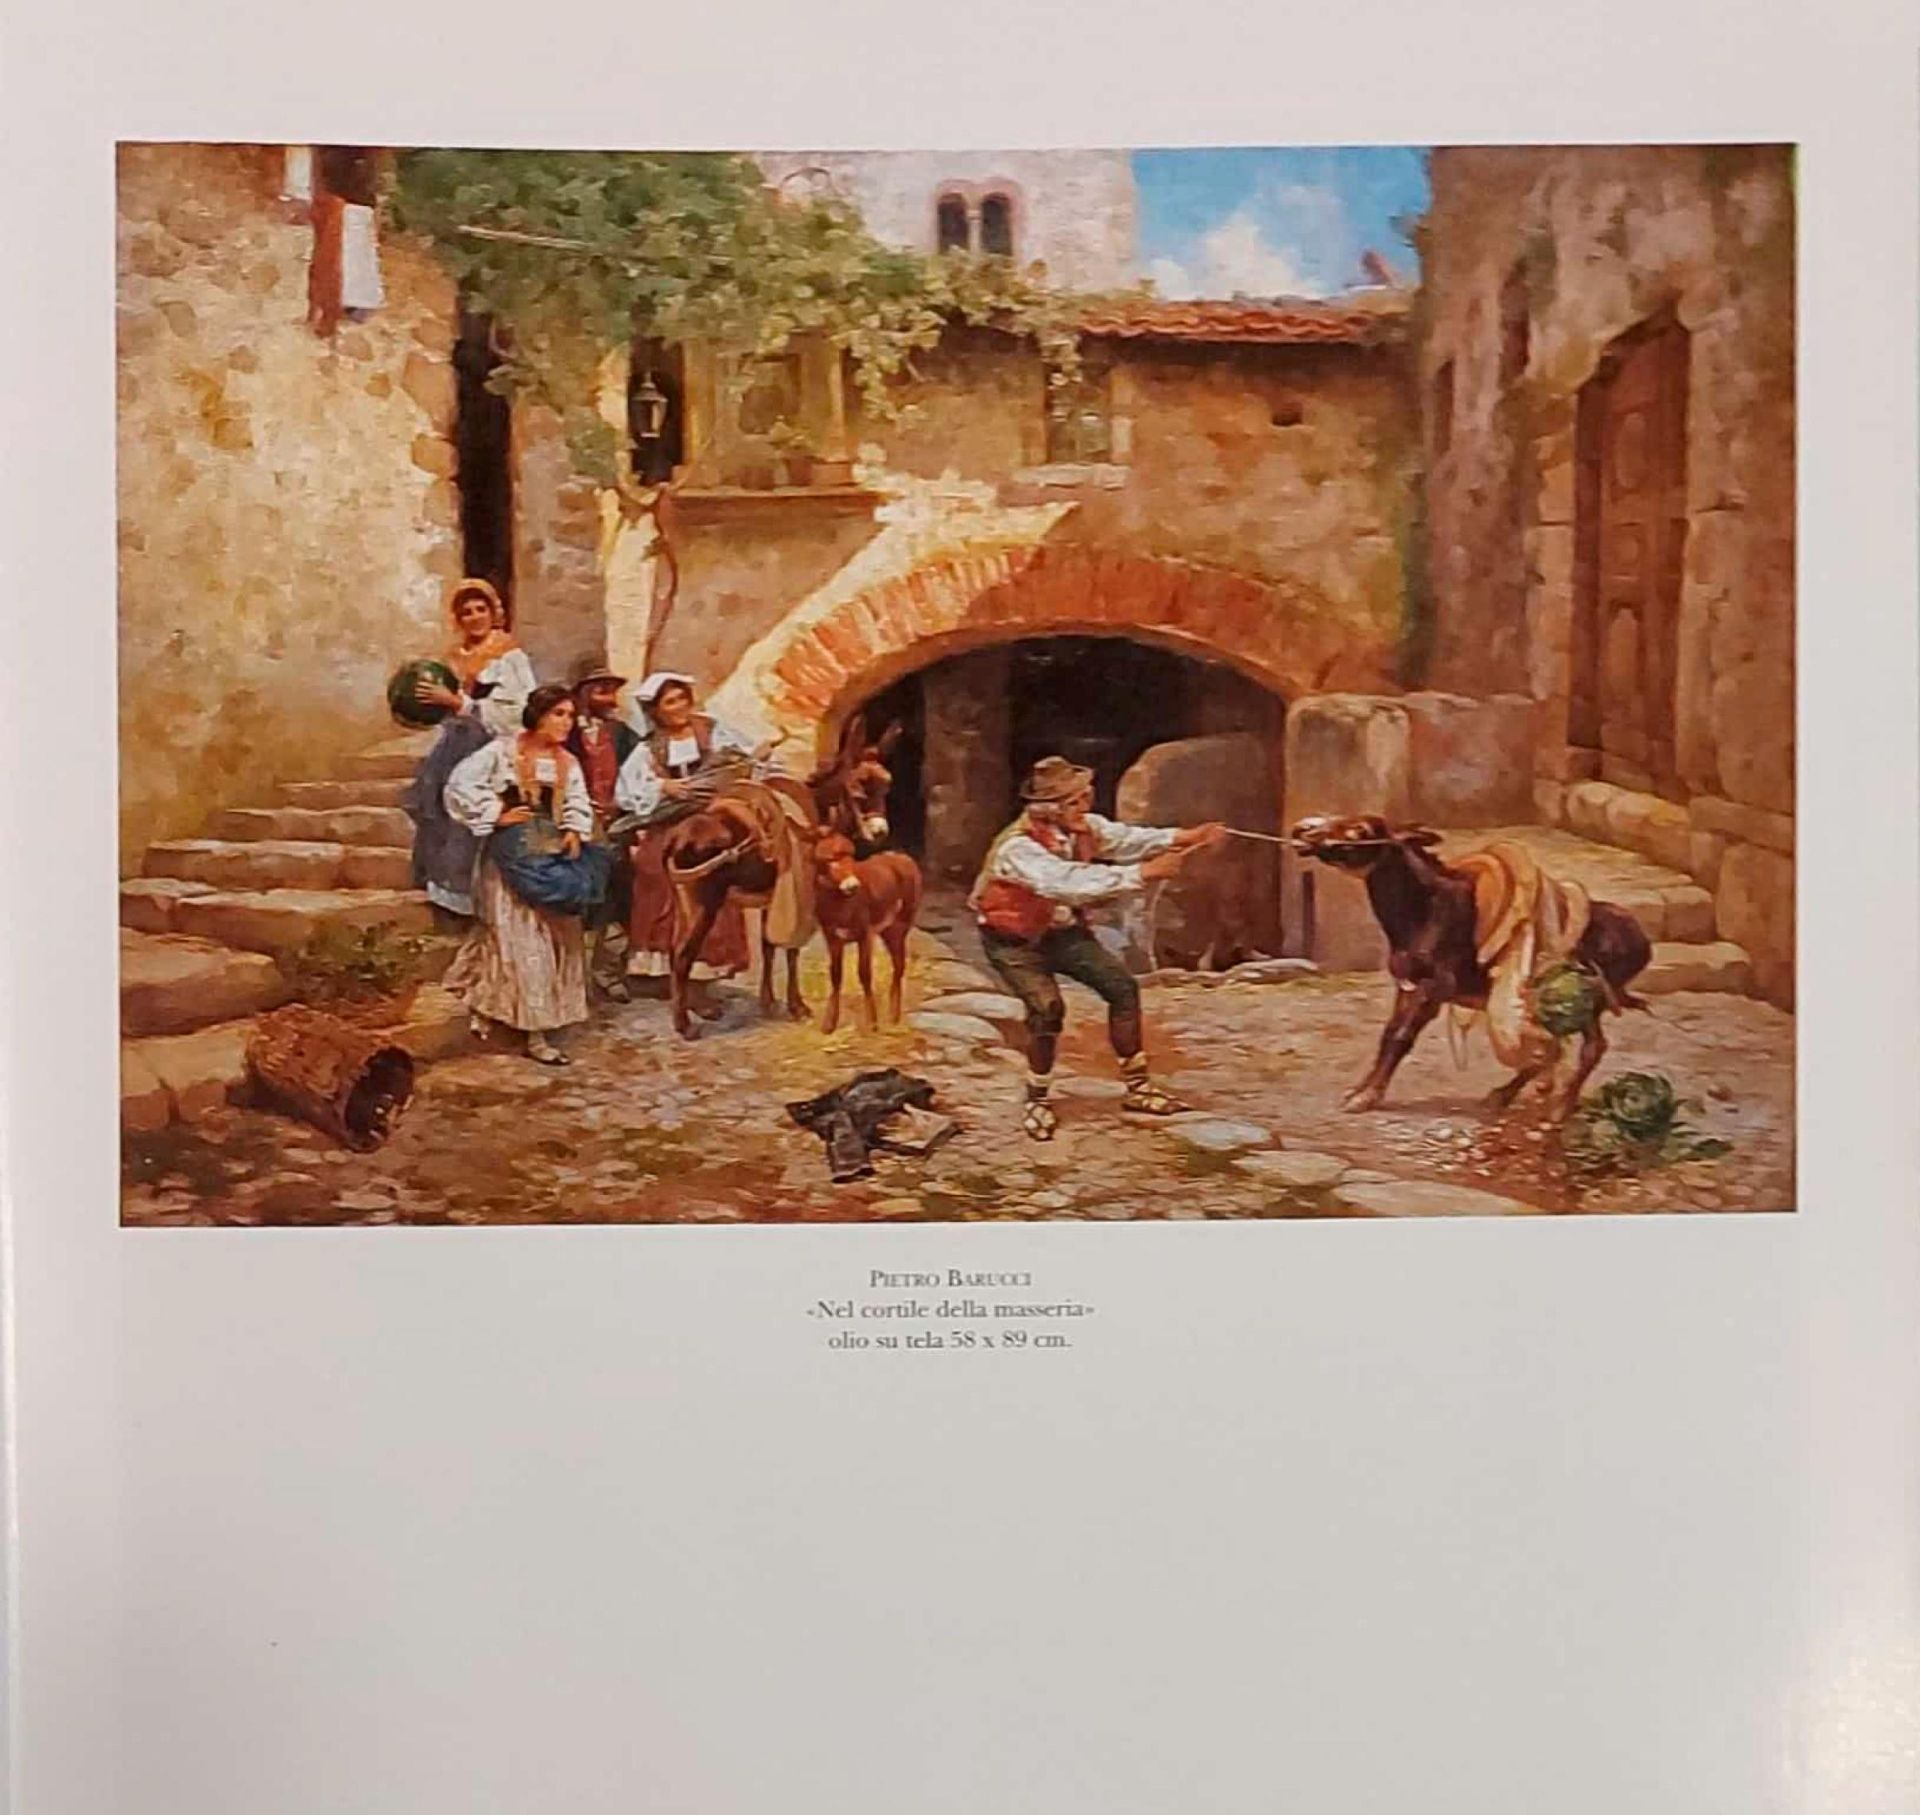 "Nel cortile della masseria" - Pietro Barucci - Image 6 of 7